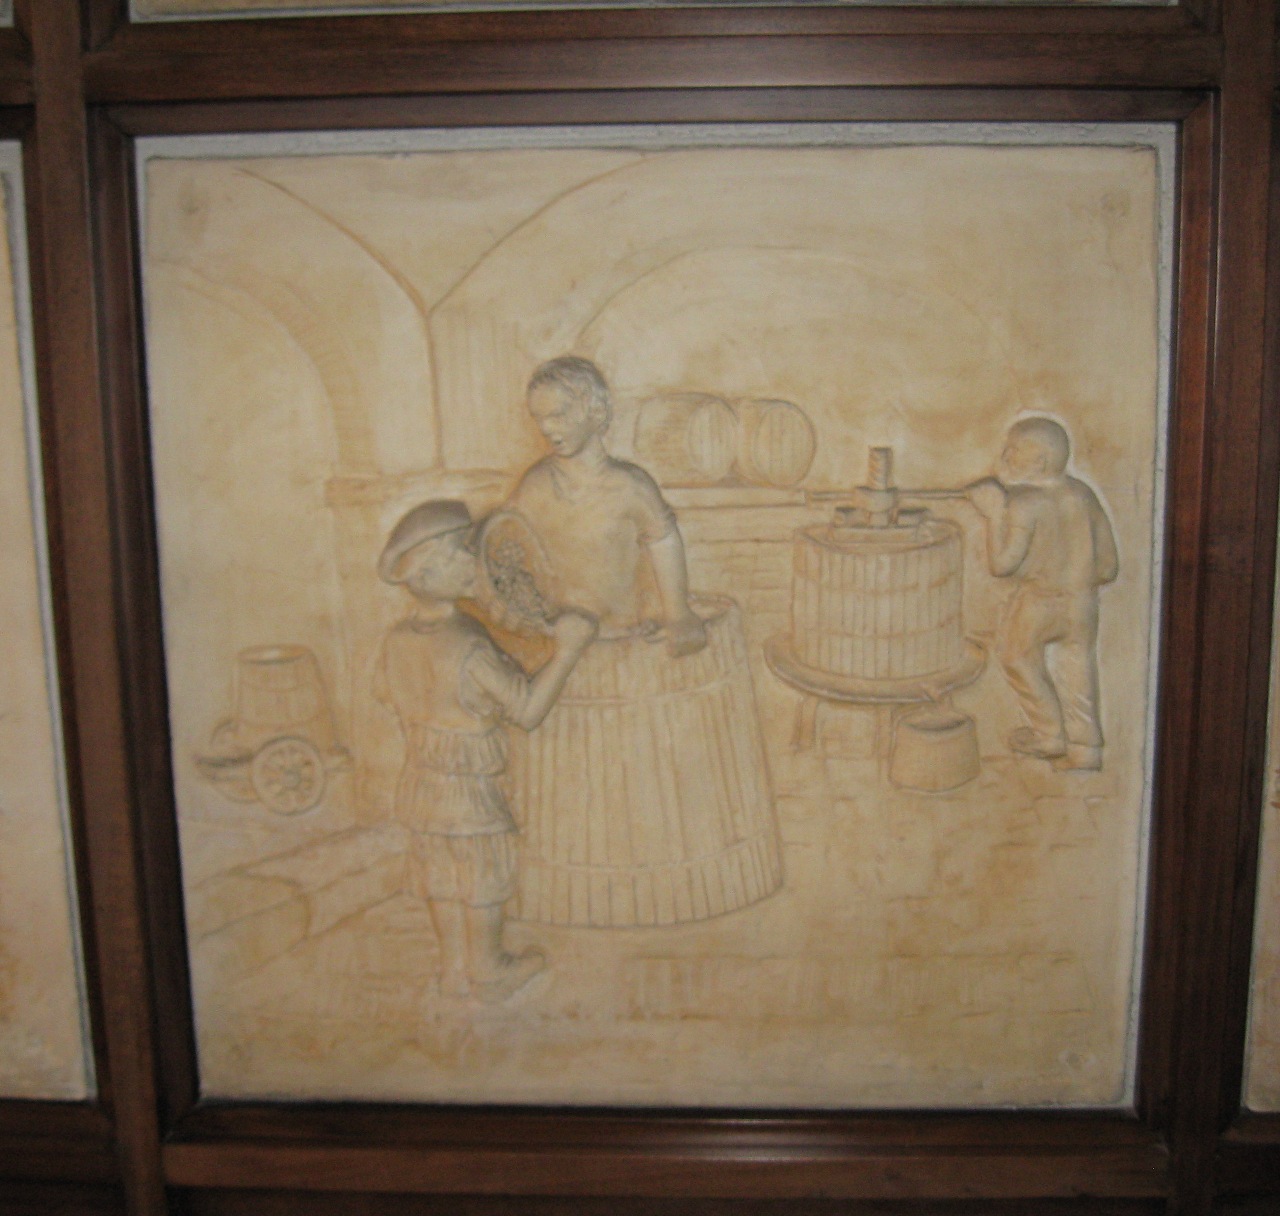 Figure maschili impegnate nelle fasi della produzione del vino (rilievo)